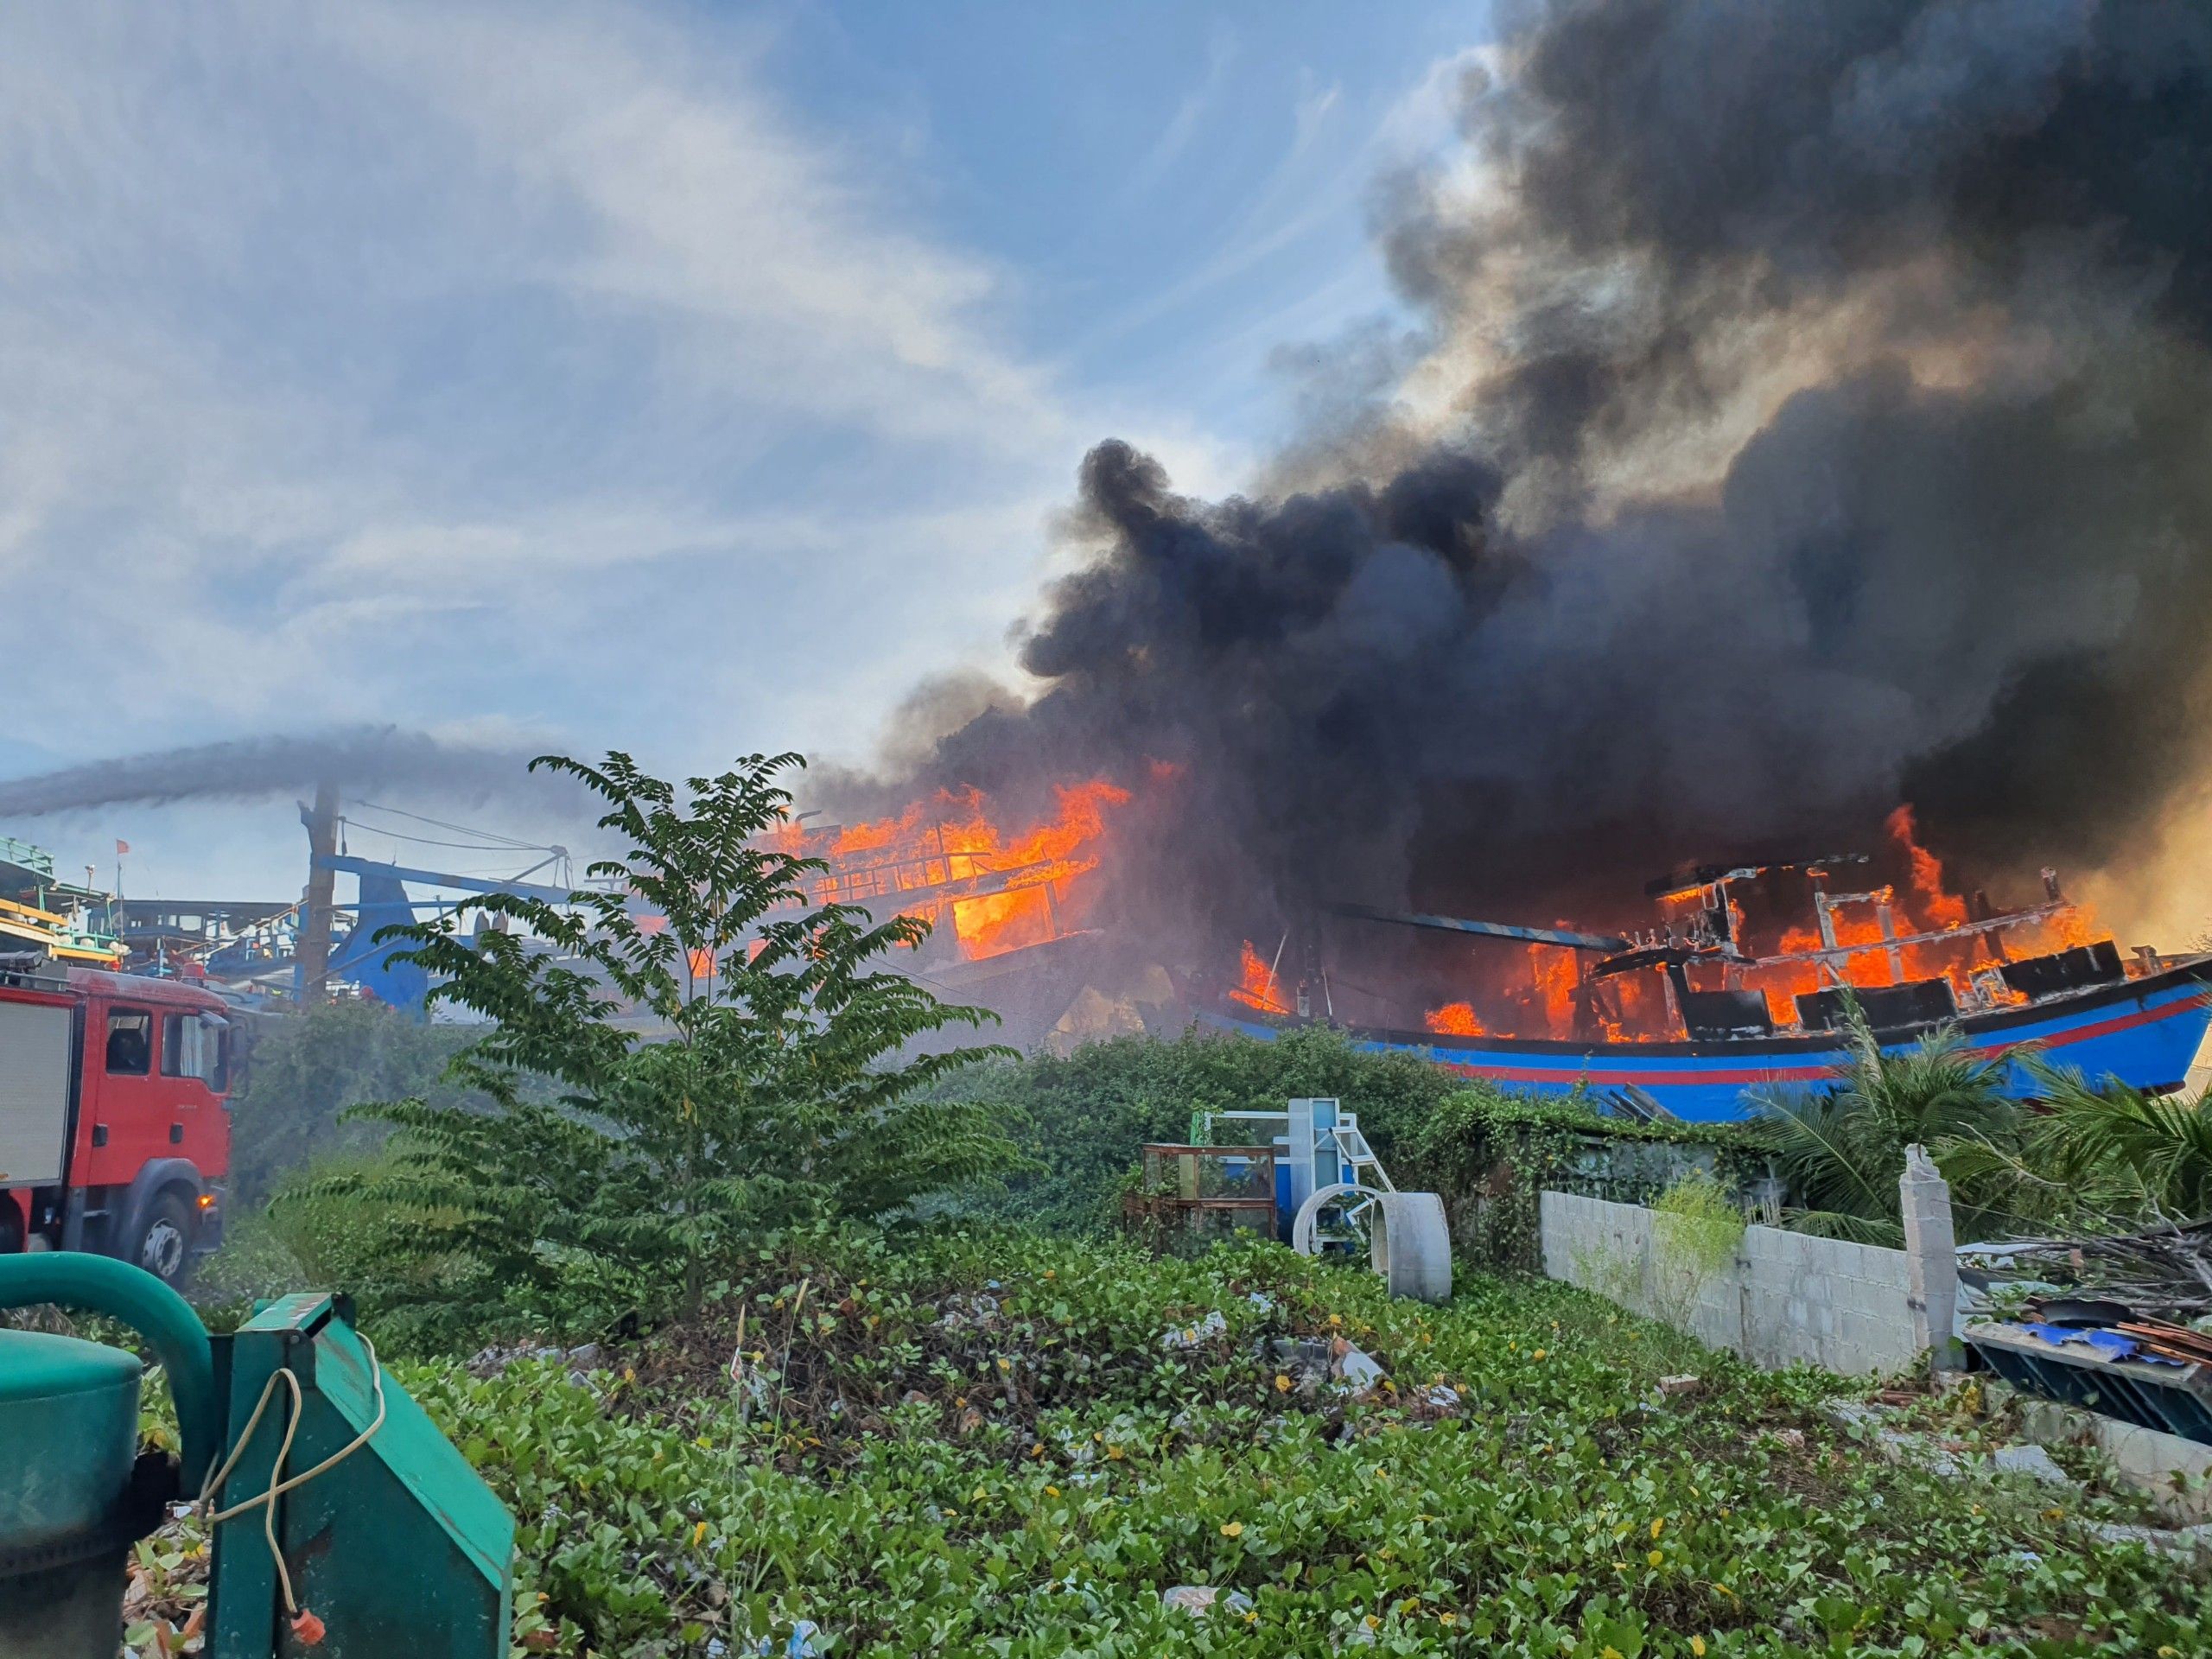 Thiệt hại trên 40 tỷ đồng sau vụ cháy 11 tàu cá tại Bình Thuận